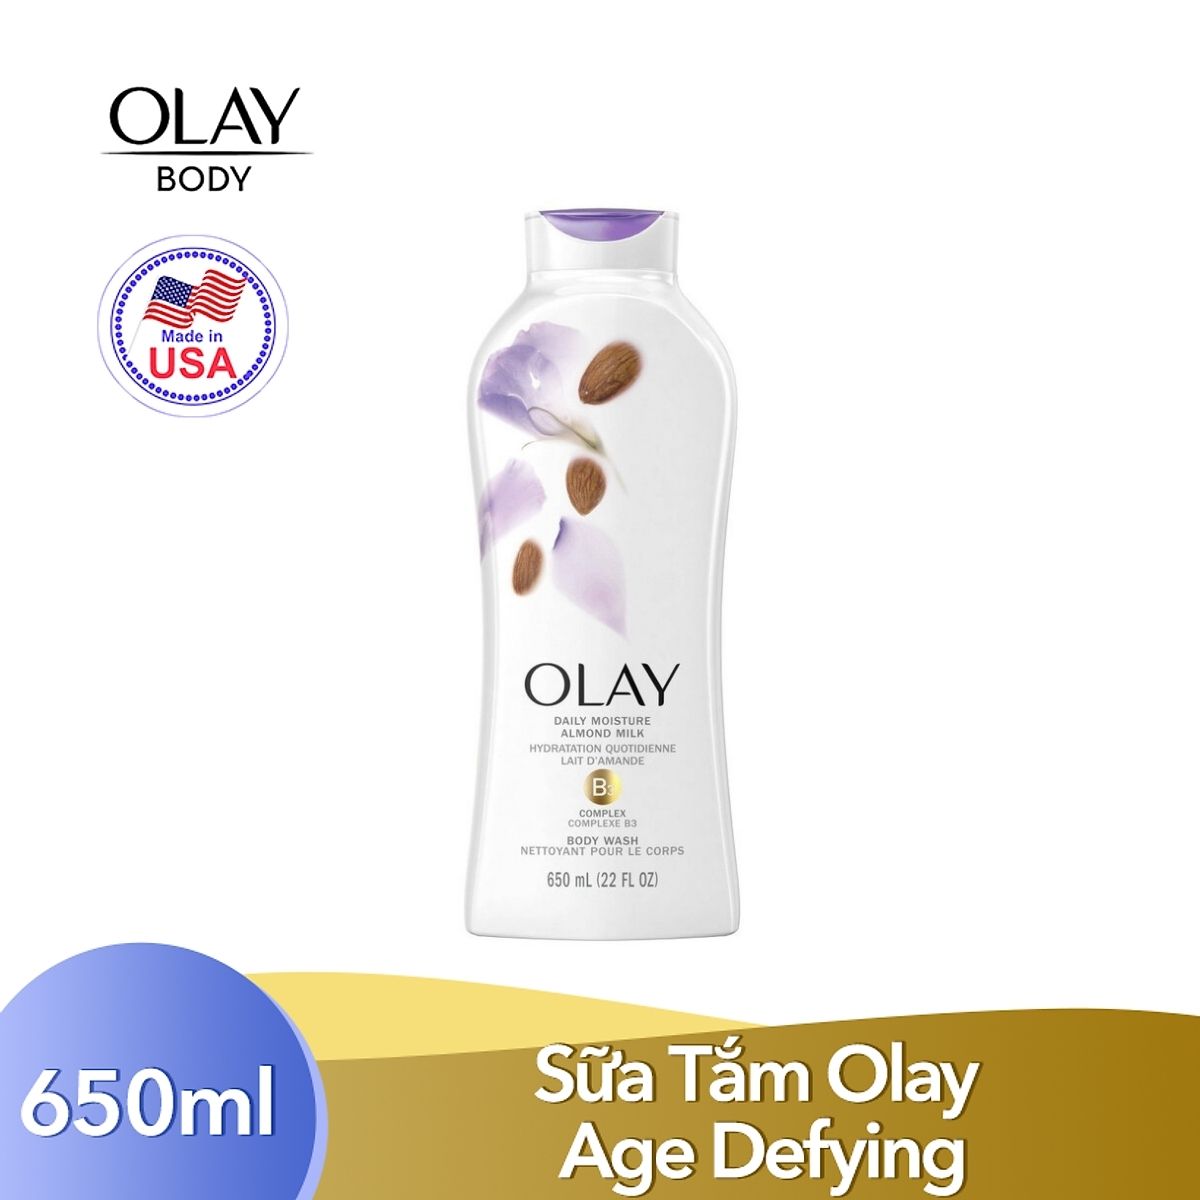 Sữa Tắm Dưỡng Ẩm Olay Body Wash 650ml